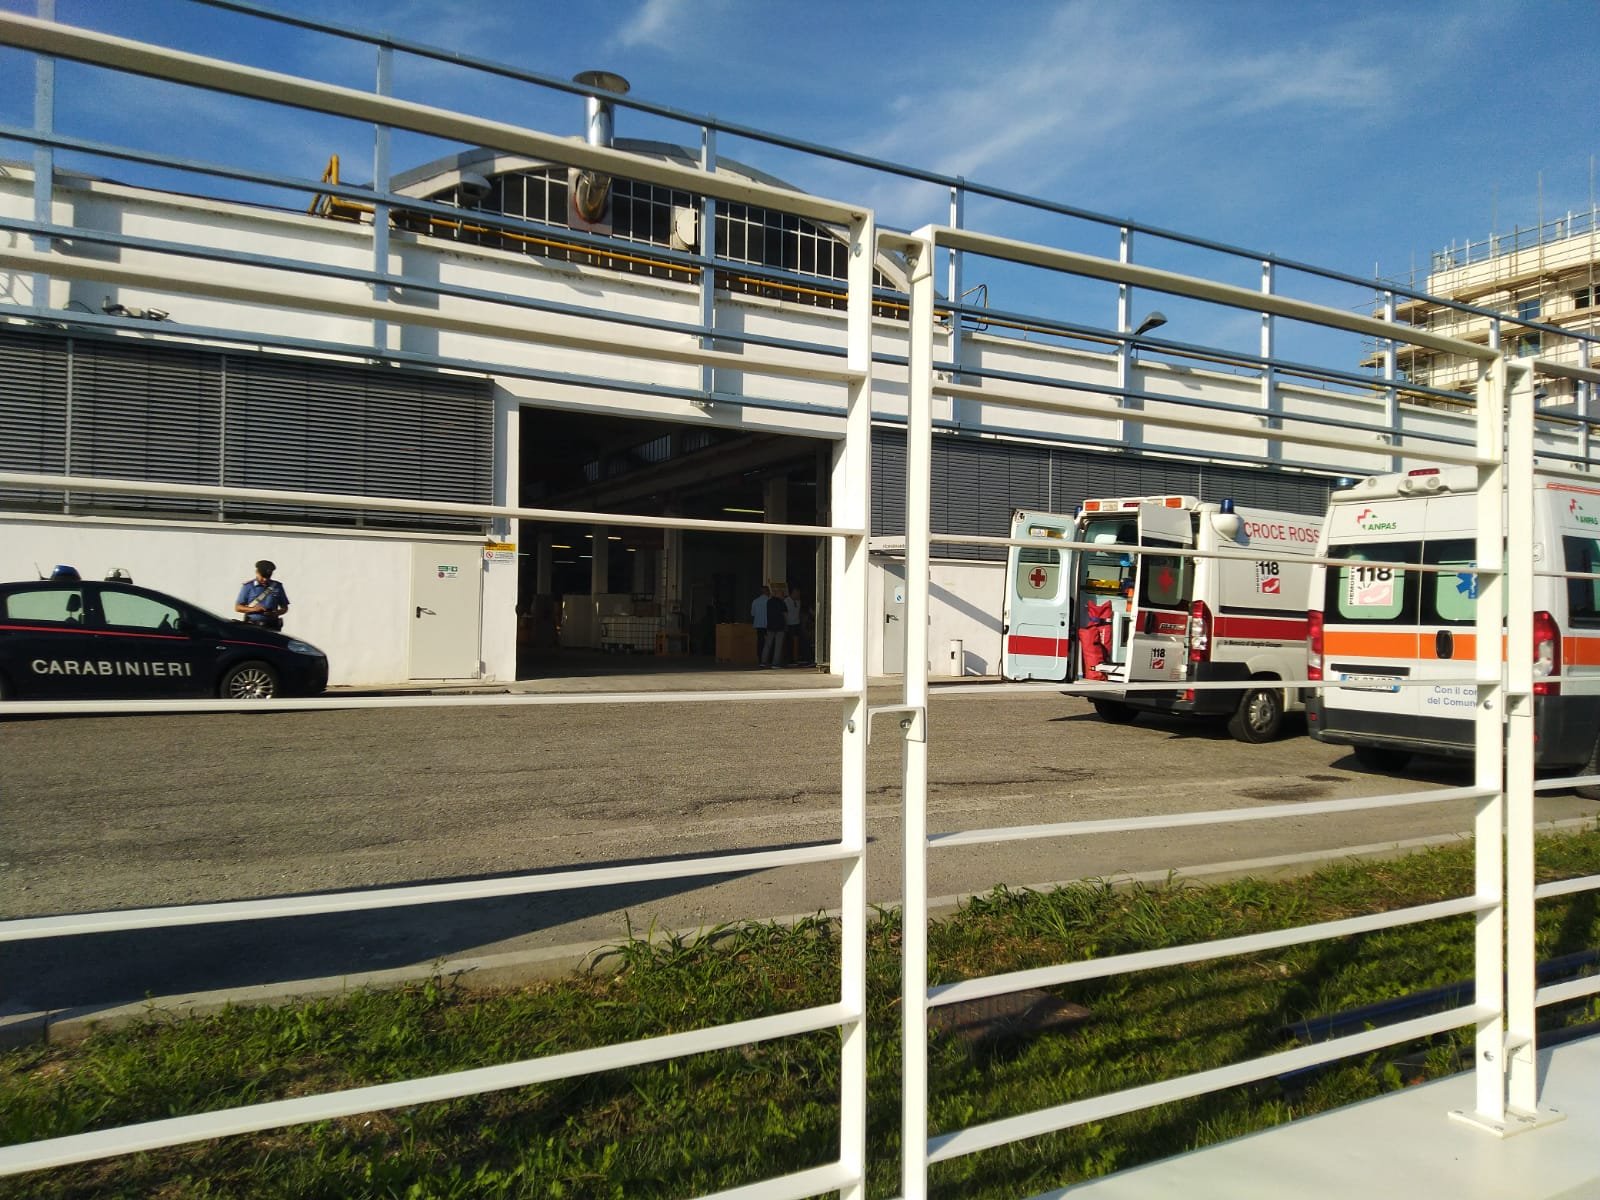 Via-vai continuo di ambulanze dall’azienda per maxi intossicazione alimentare